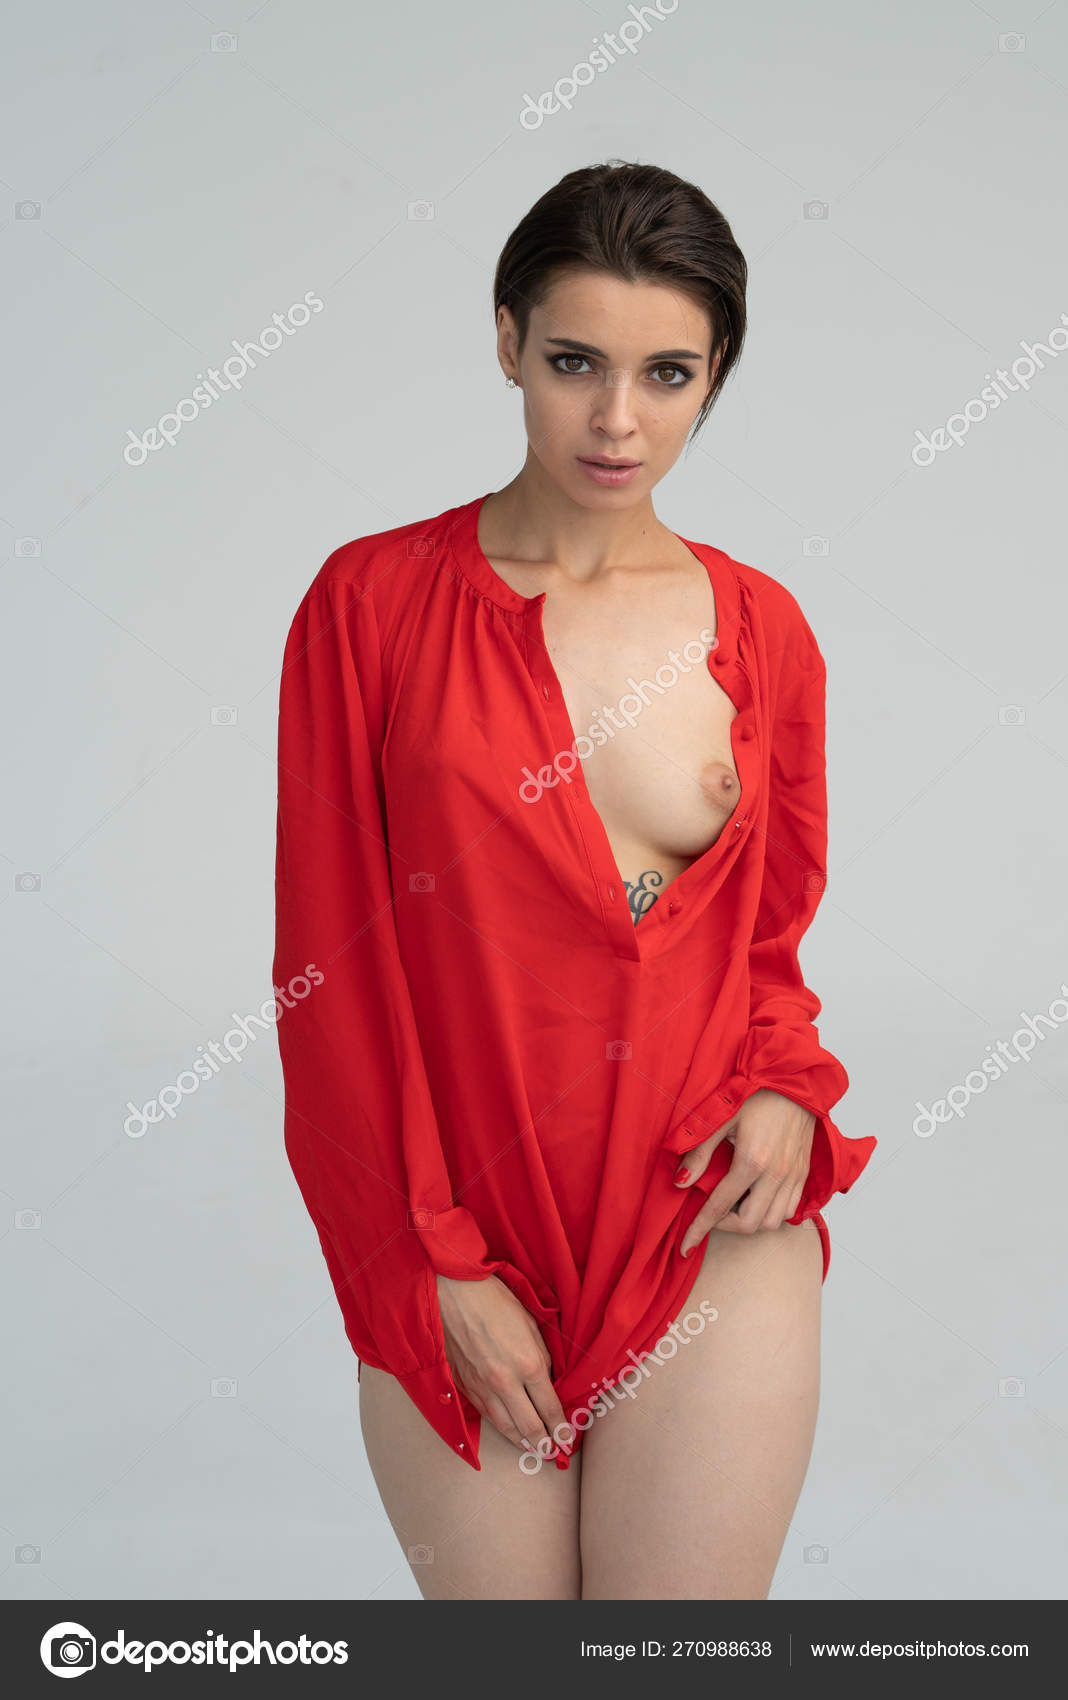 https://st4n.depositphotos.com/10086424/27098/i/1600/depositphotos_270988638-stock-photo-young-beautiful-girl-posing-nude.jpg